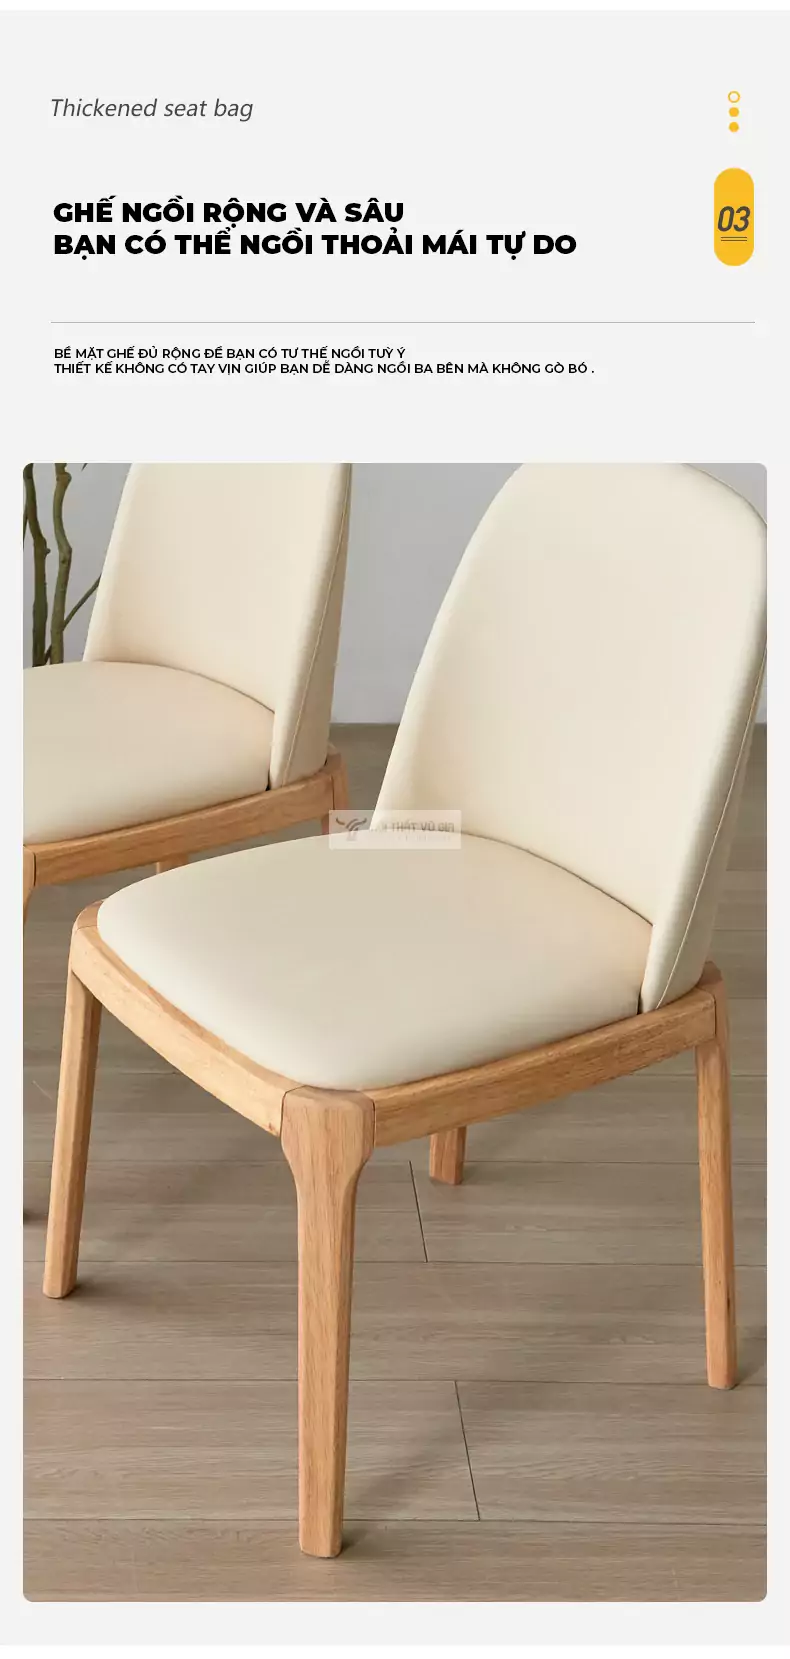 thiết kế ghế ngồi sâu mang đến cảm giác thoải mái của Ghế gỗ kết hợp nệm cao cấp SD106